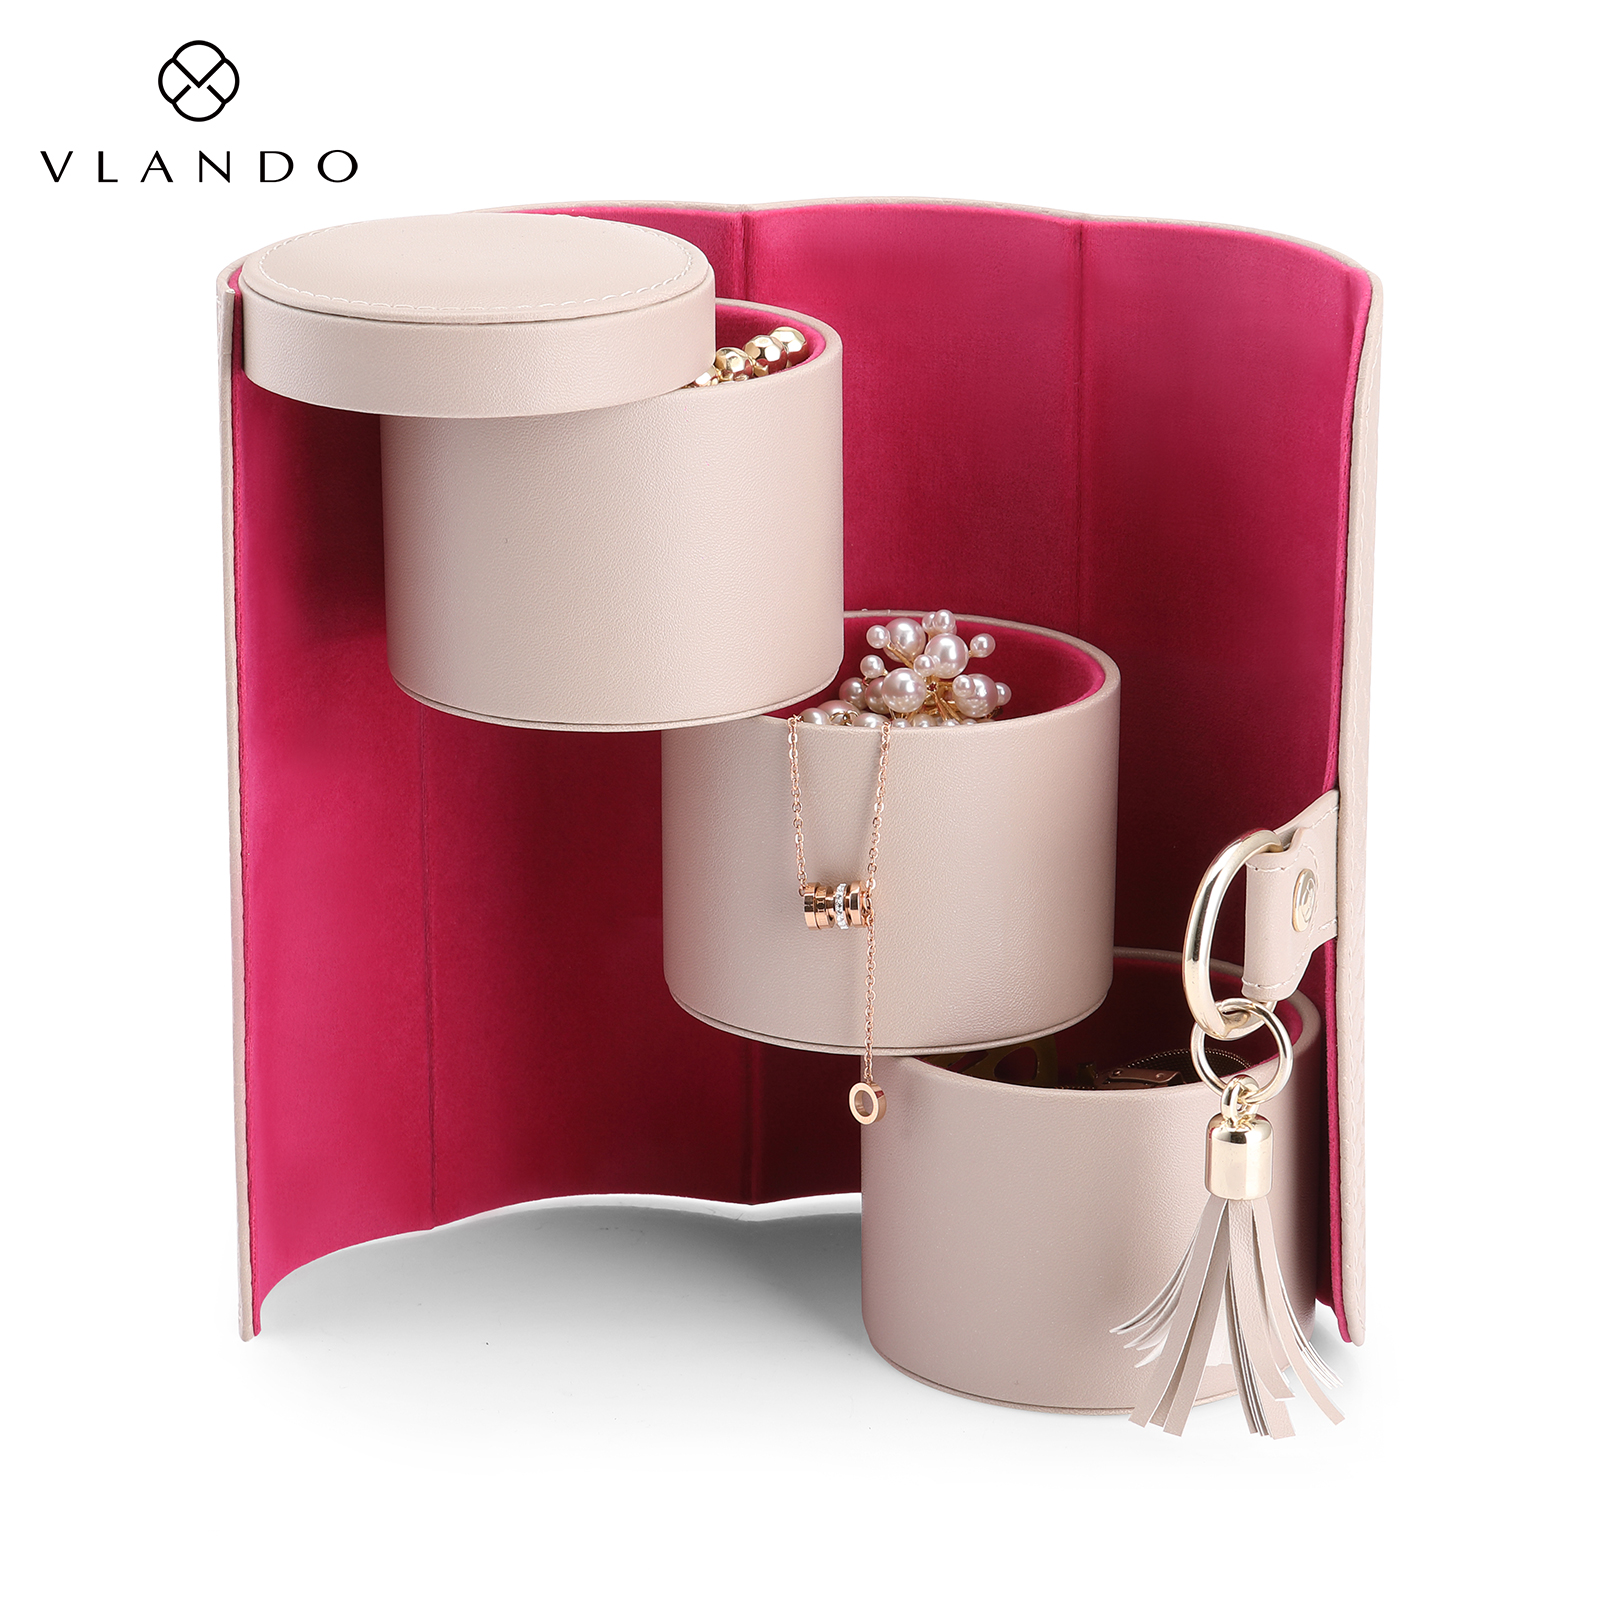 Viaggio Small Travel Jewelry Box | VLANDO 